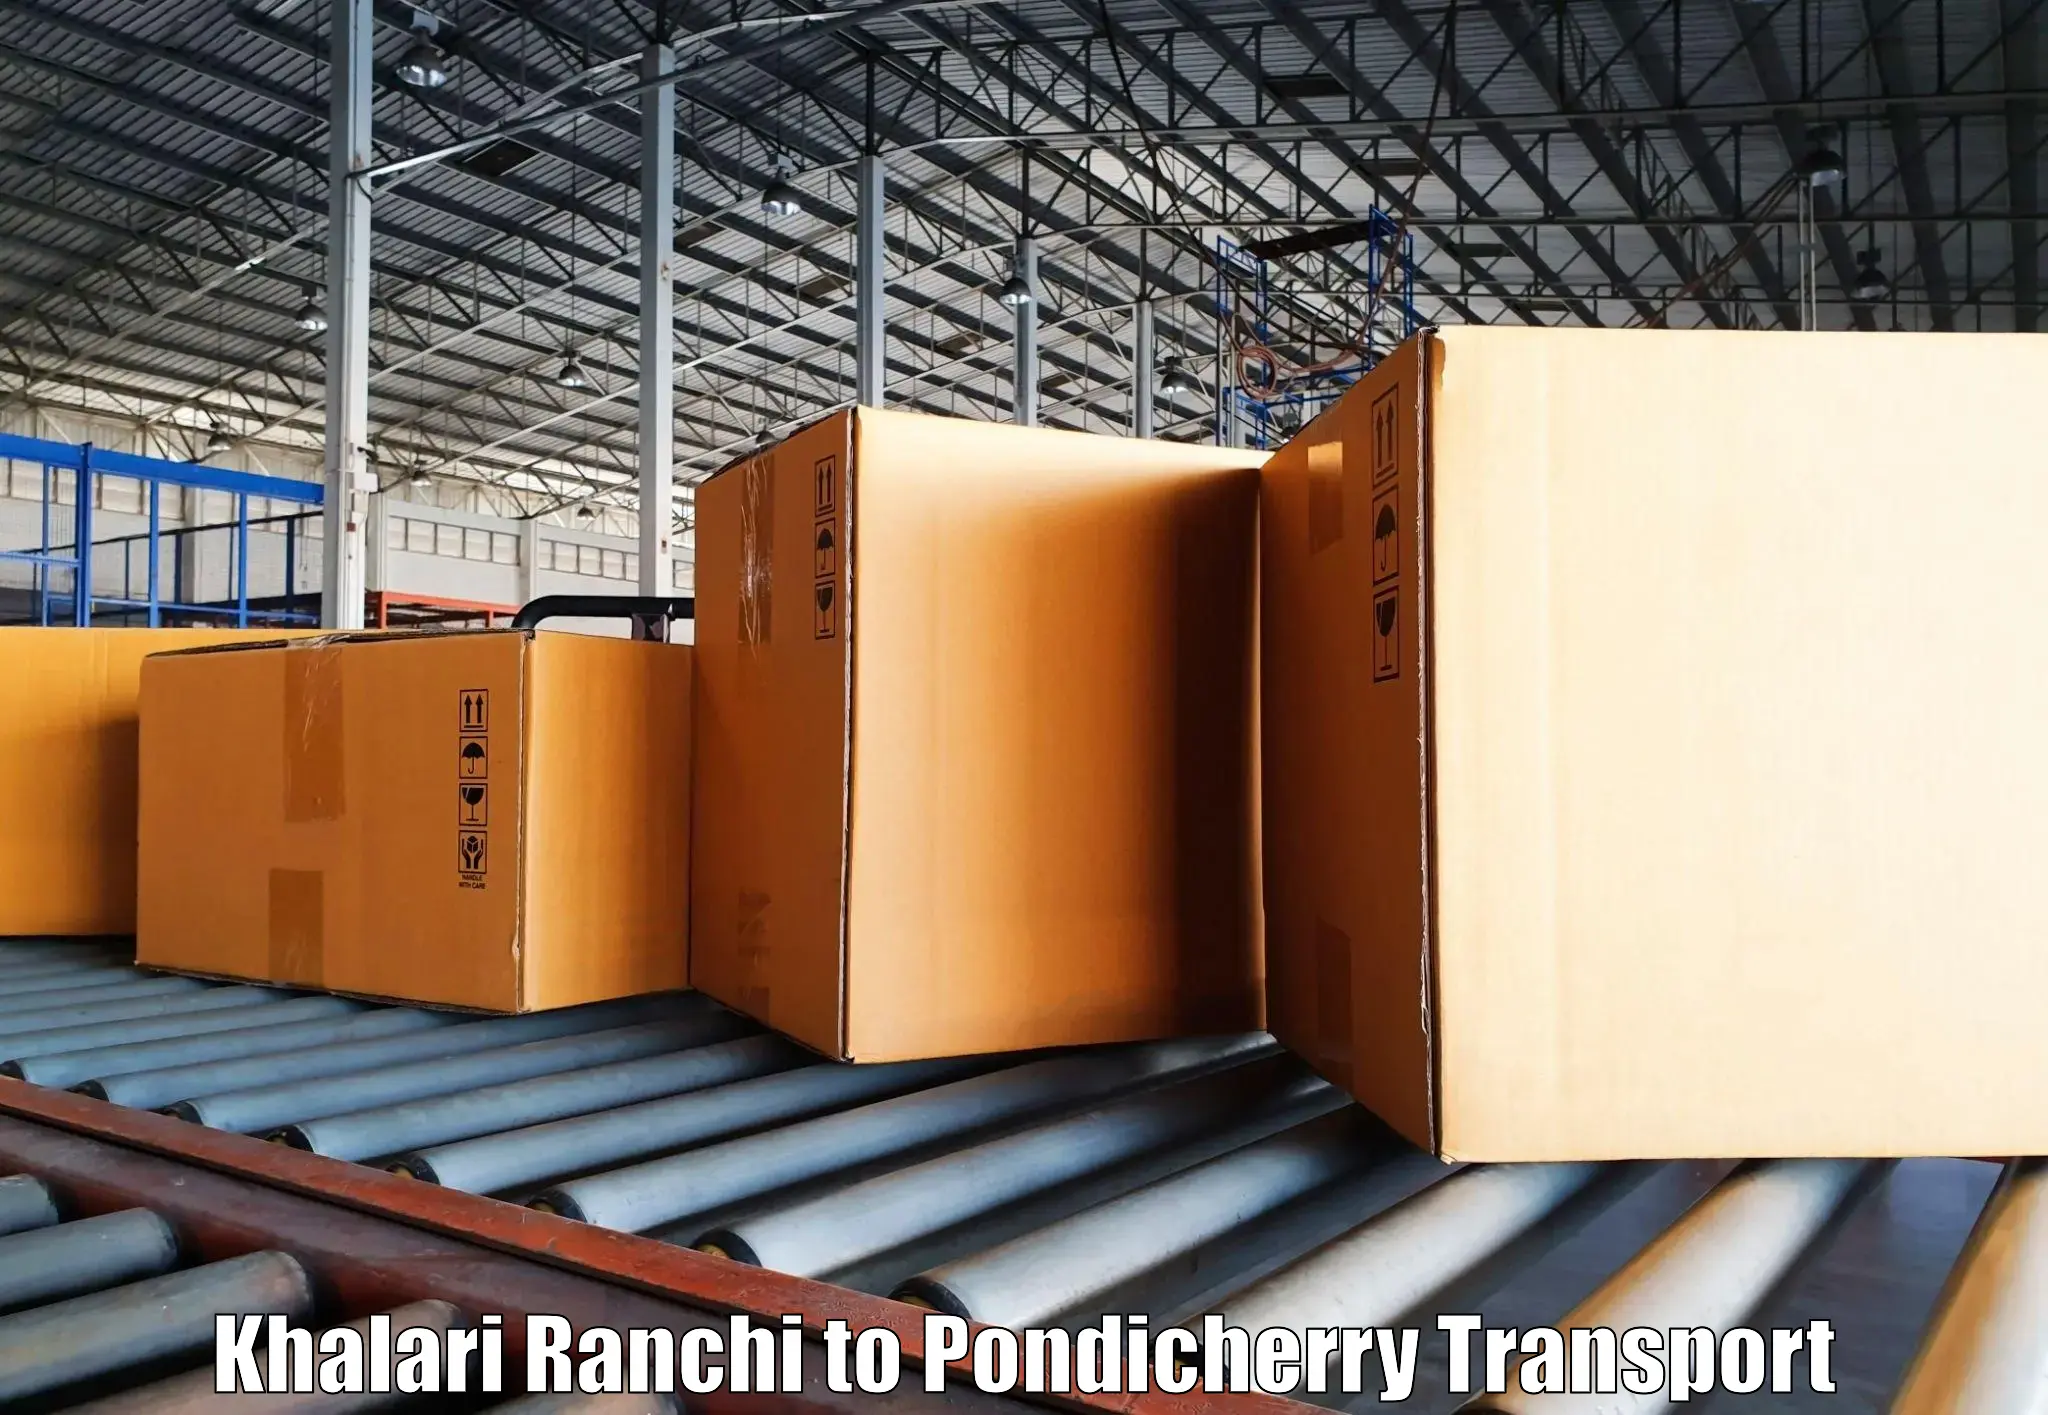 Truck transport companies in India Khalari Ranchi to Metttupalayam